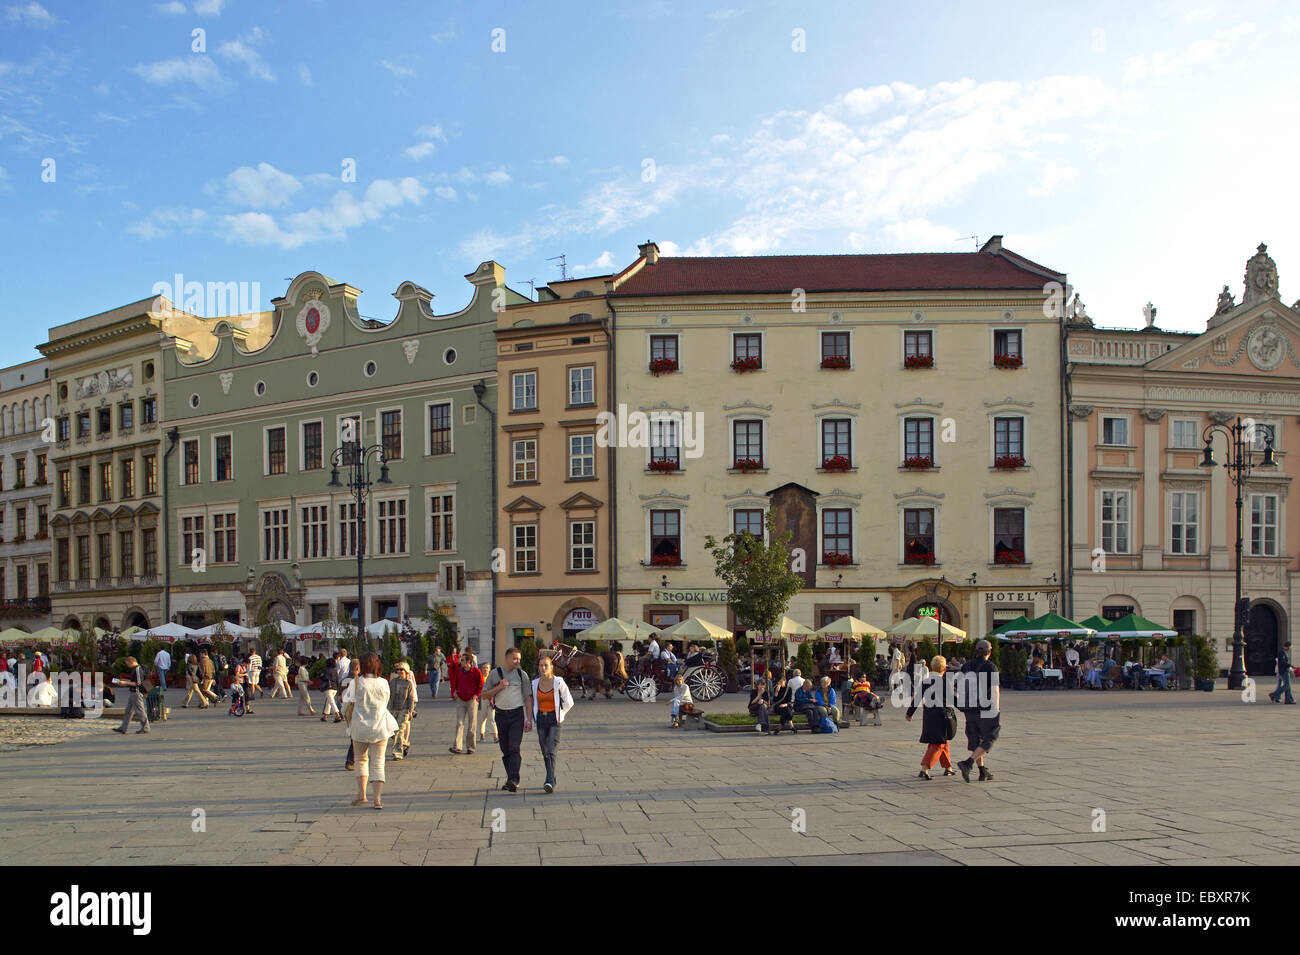 Poland, Kracow, old market Stock Photo